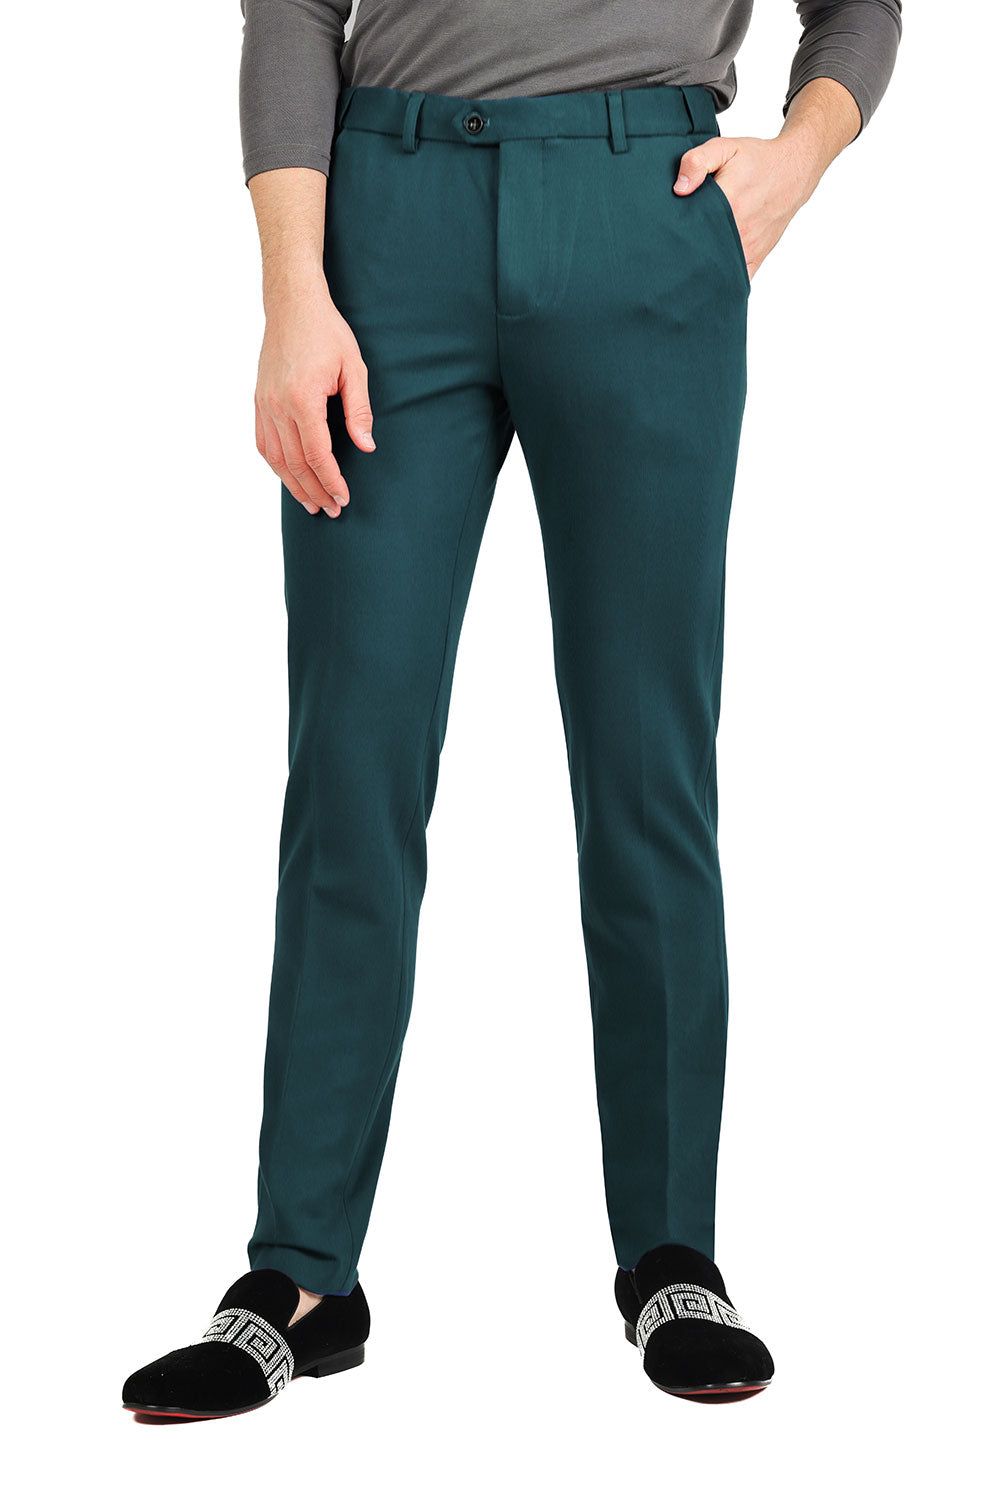 Barabas Men's Matte Solid Color Dress Pants 2CPR6 Teal